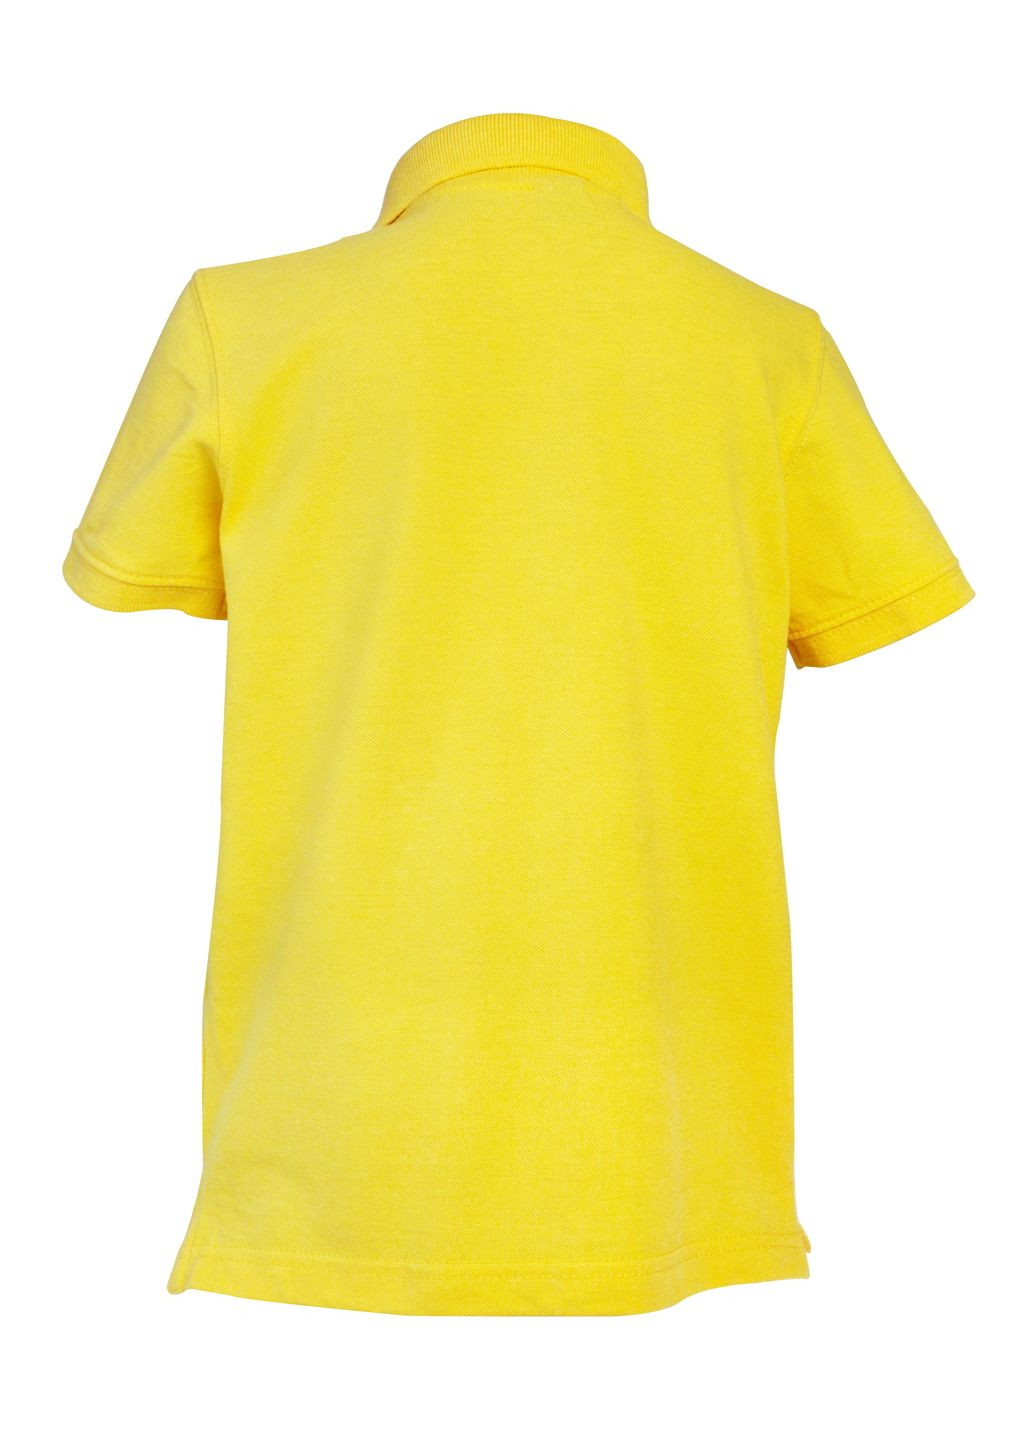 Желтая детская футболка-футболка поло для мальчика 116 жёлтый для мальчика Freestyle